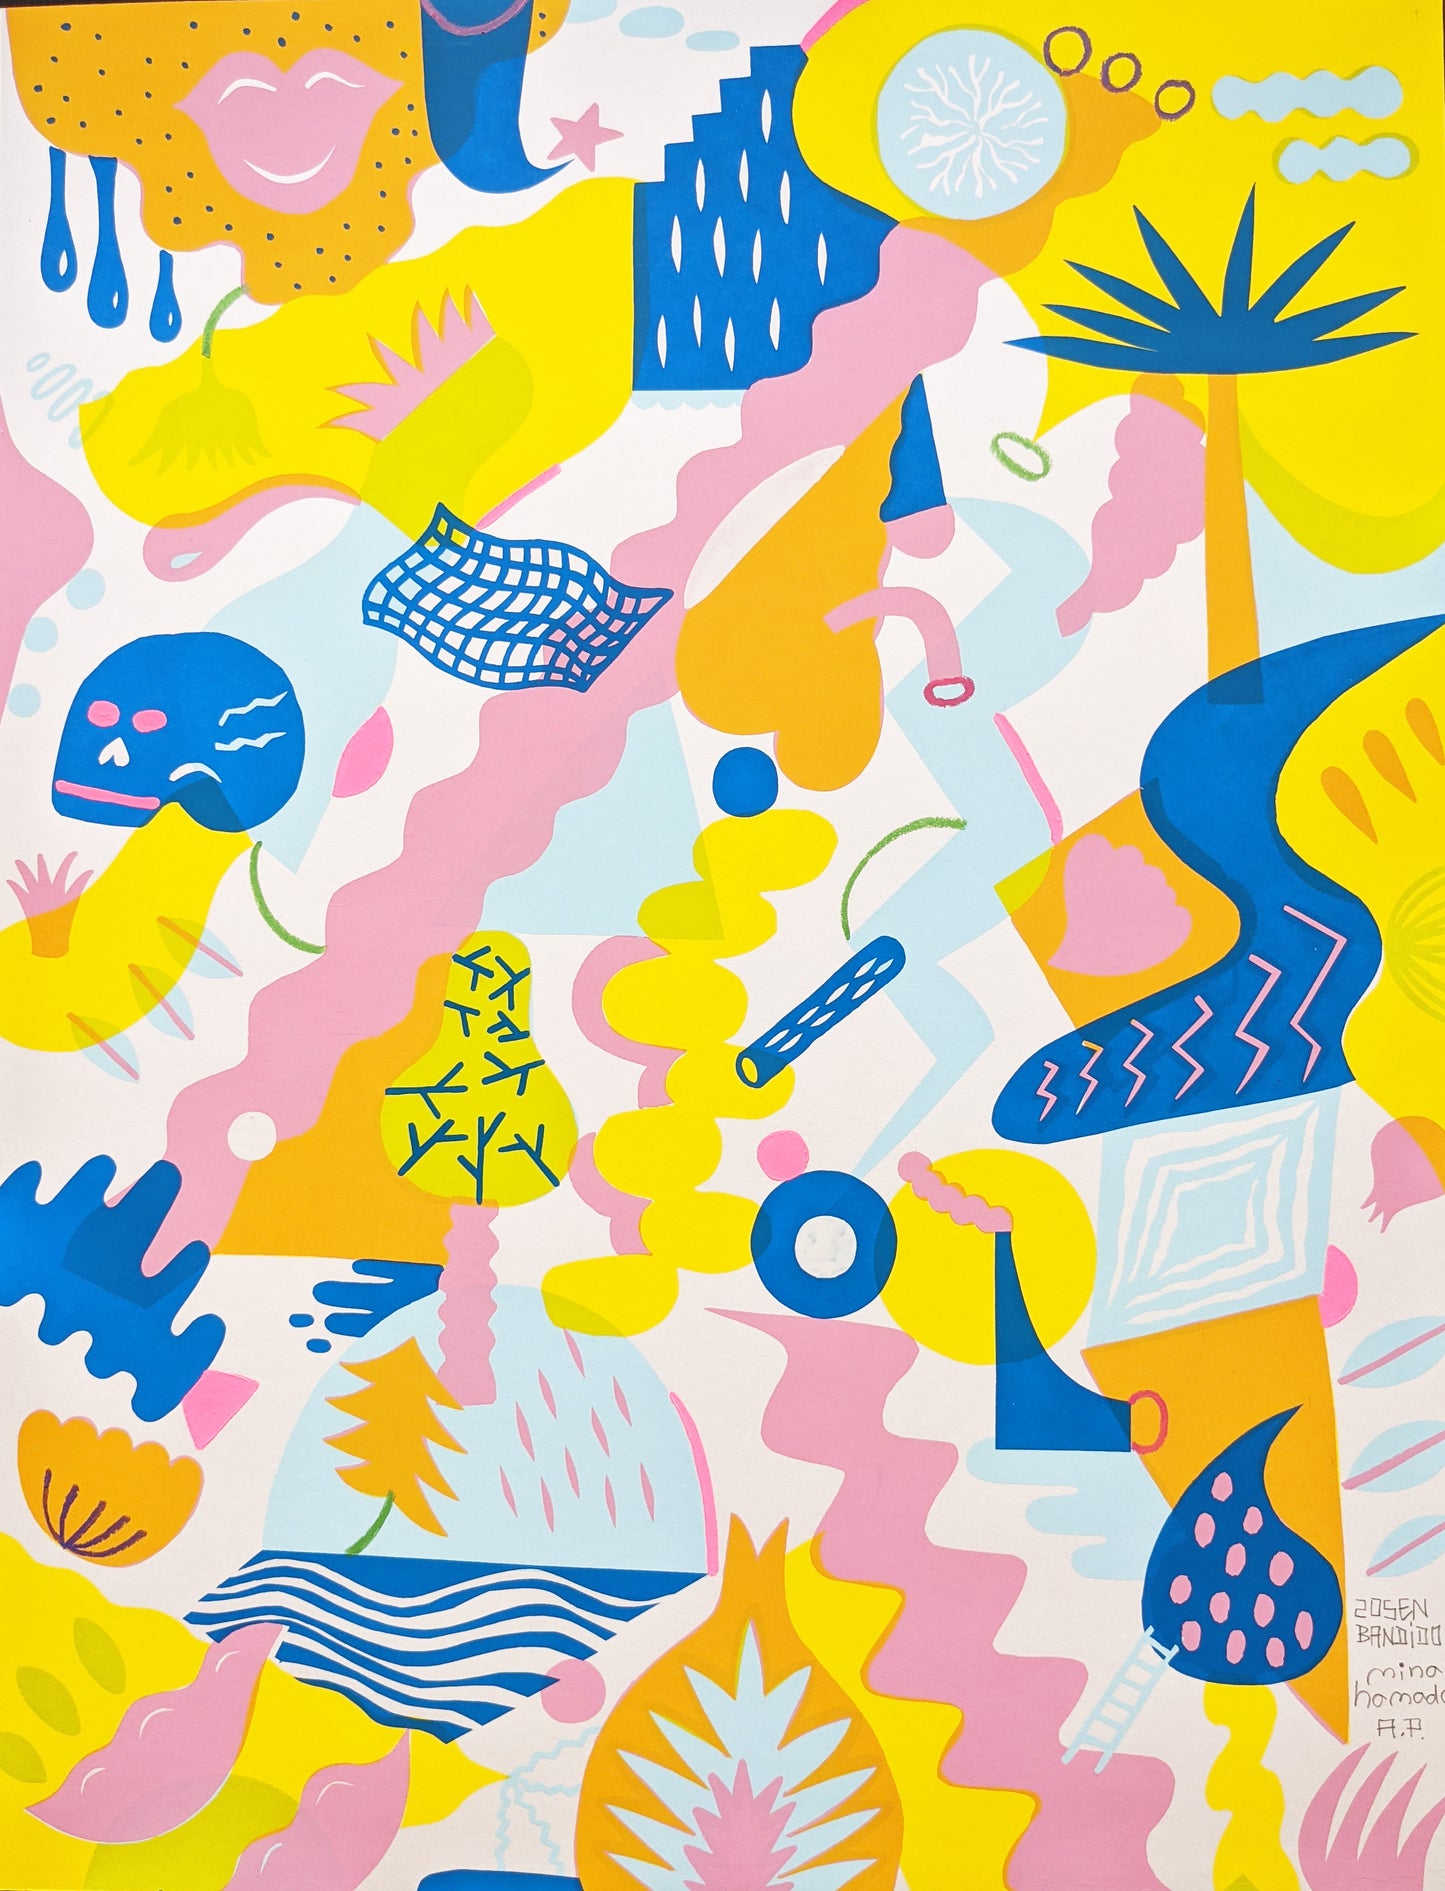 Zosen & Mina Hamada - "City Jungle" print